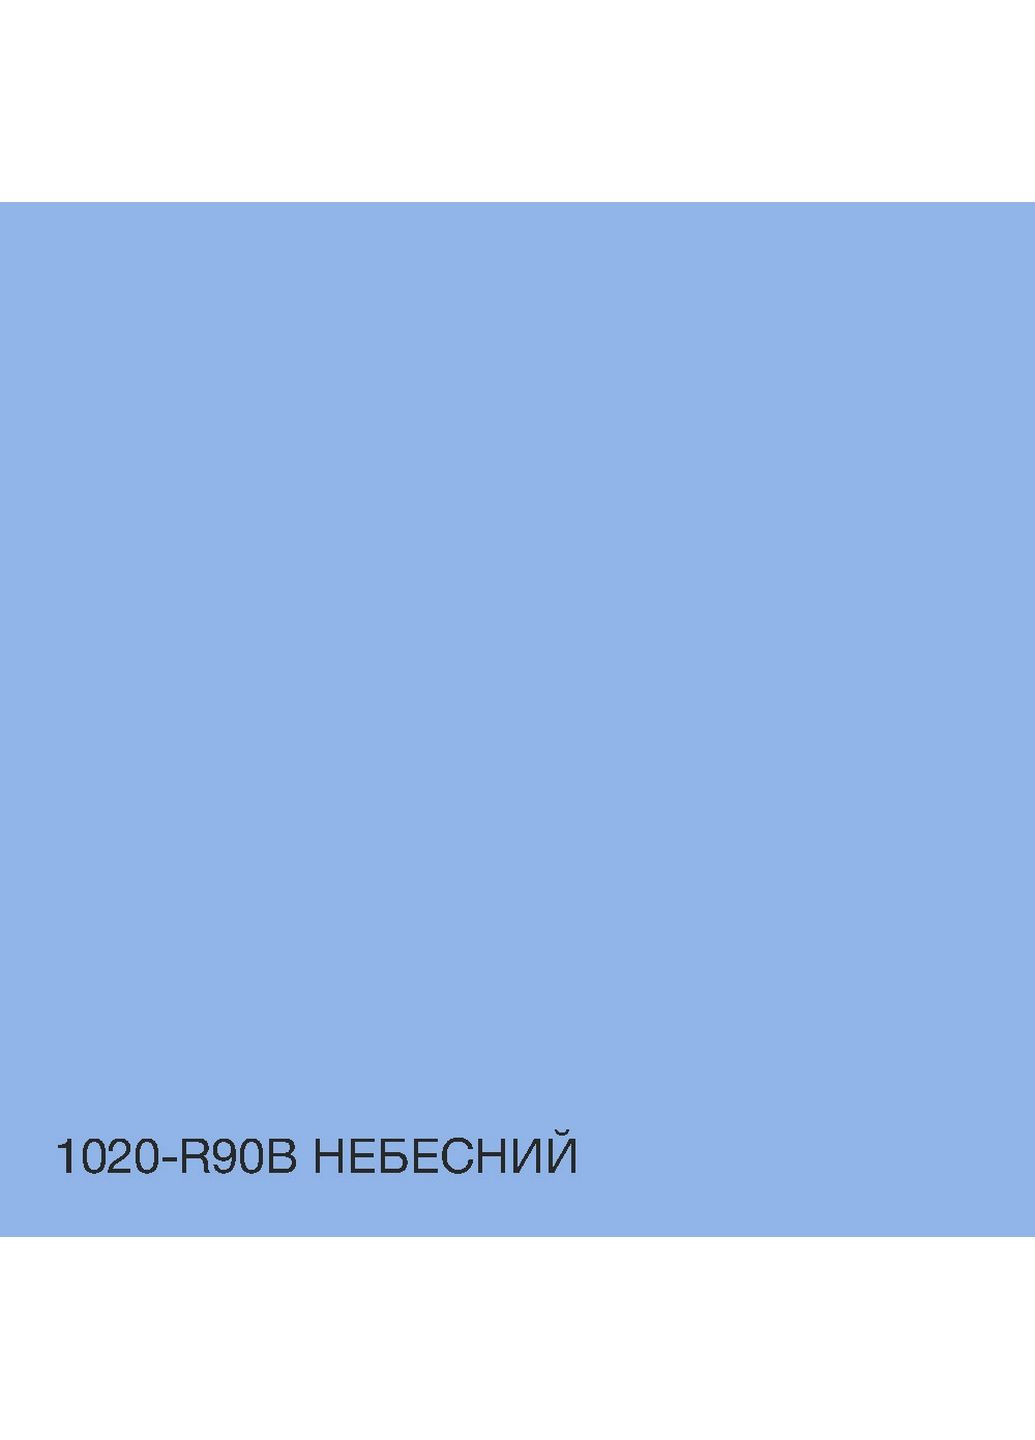 Краска фасадная акрил-латексная 1020-R90B 10 л SkyLine (289460290)